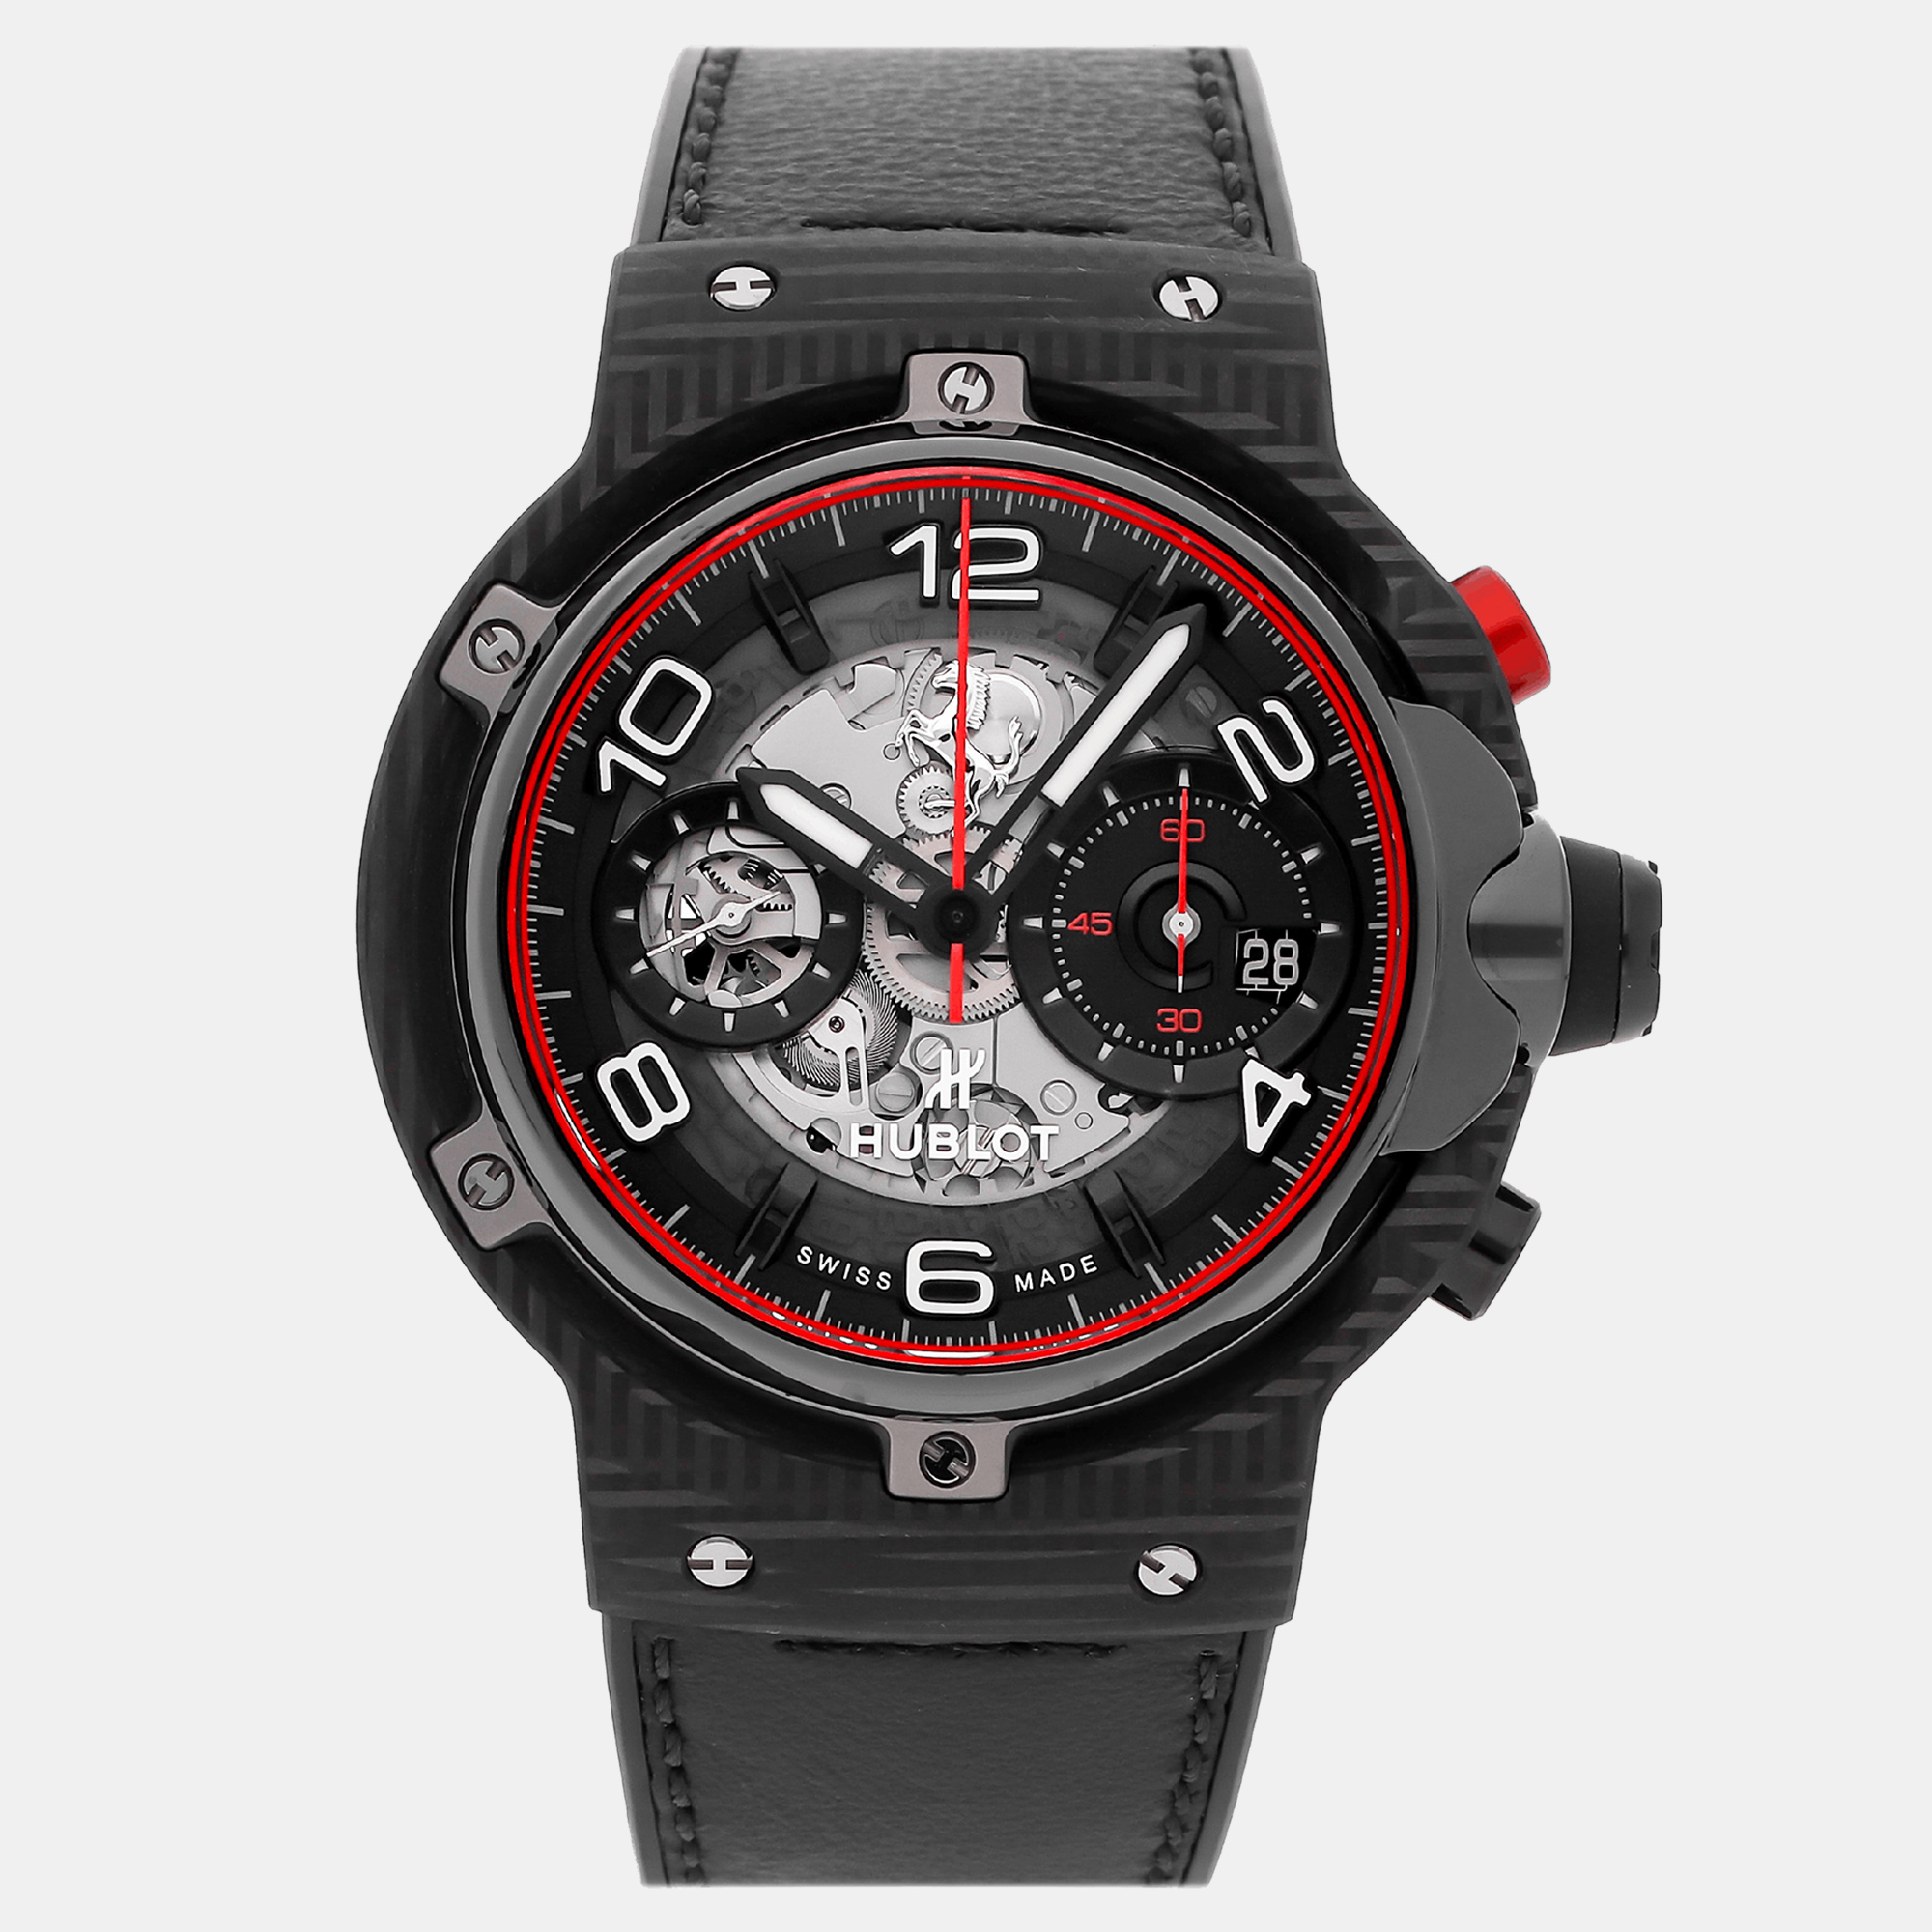 Hublot black carbon fiber big bang ferrari 526.qb.0124.vr automatic men's wristwatch 45 mm